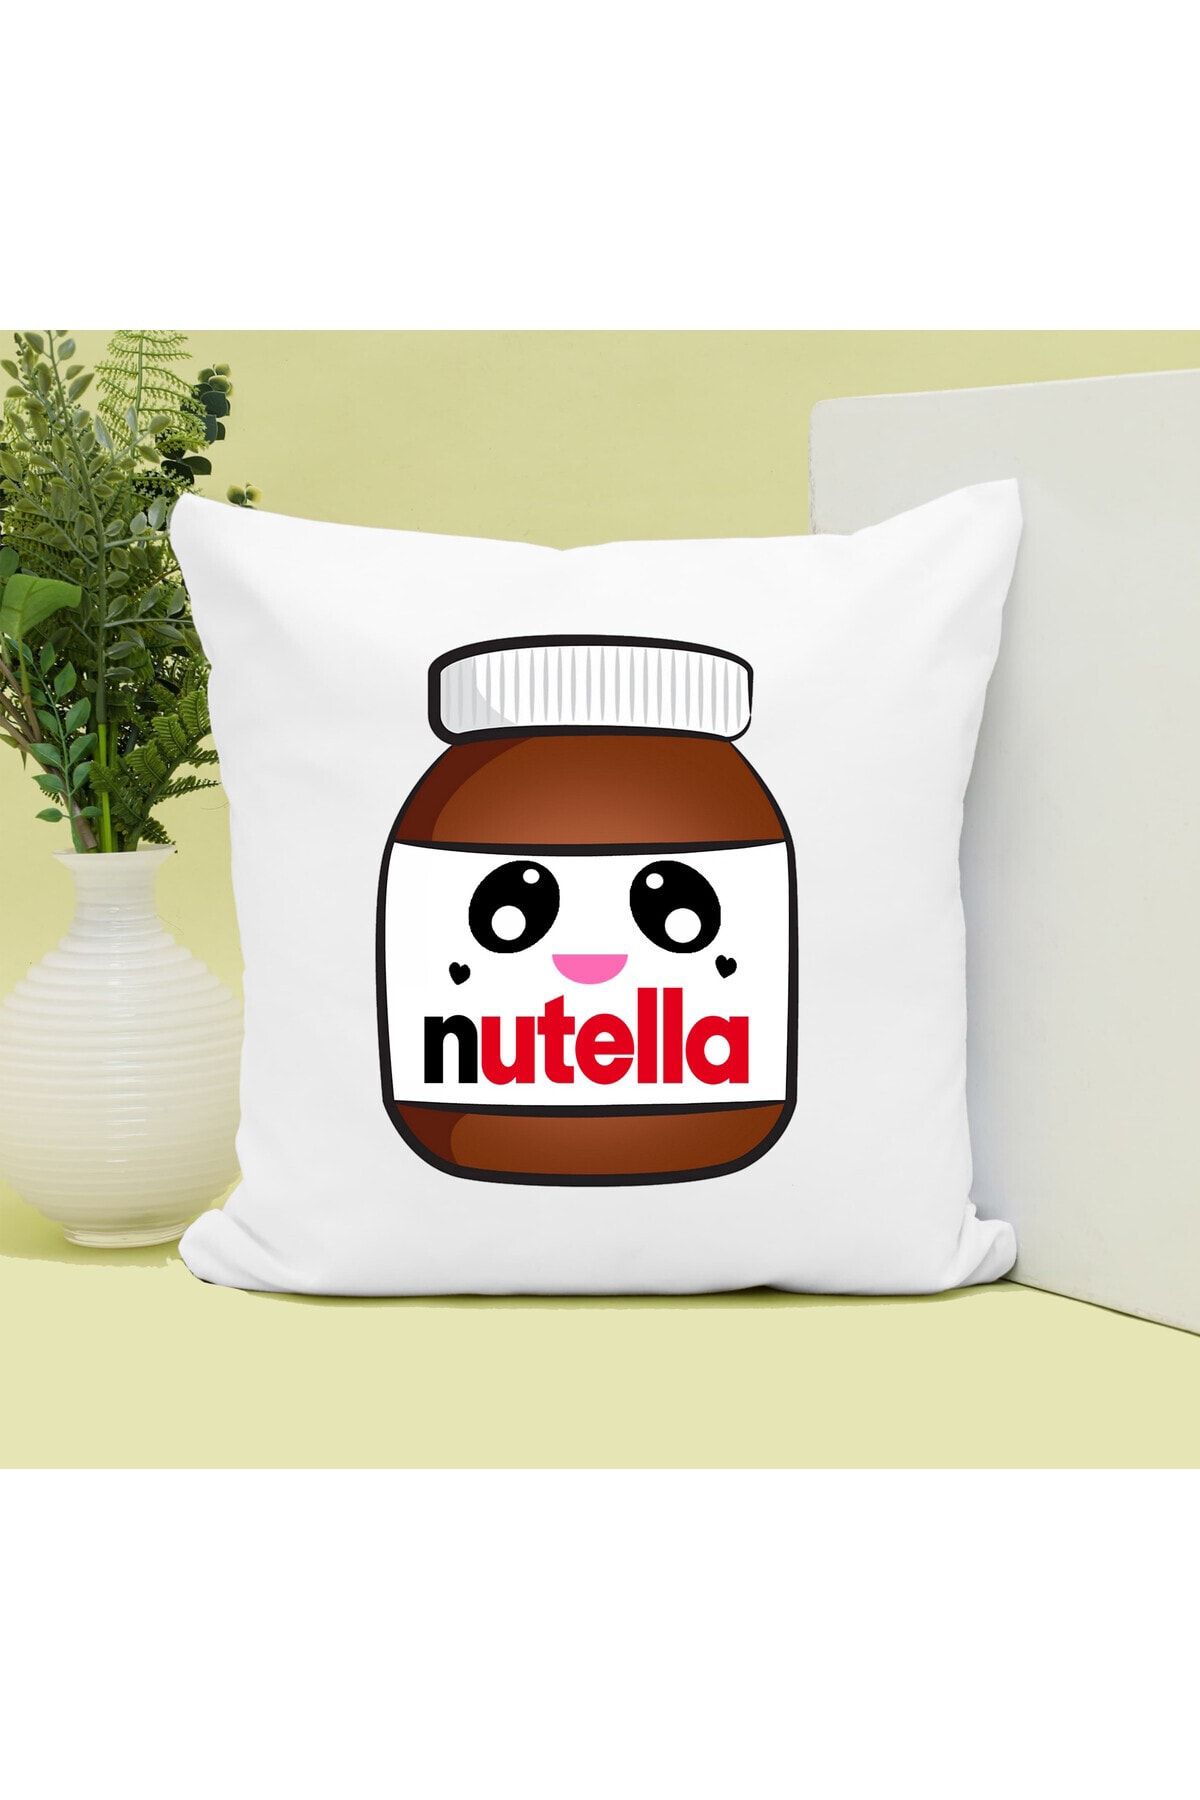 Hediye Molası Nutella Kavanoz Baskılı Yastık Hediyelik Set Arkadaşa Hediye